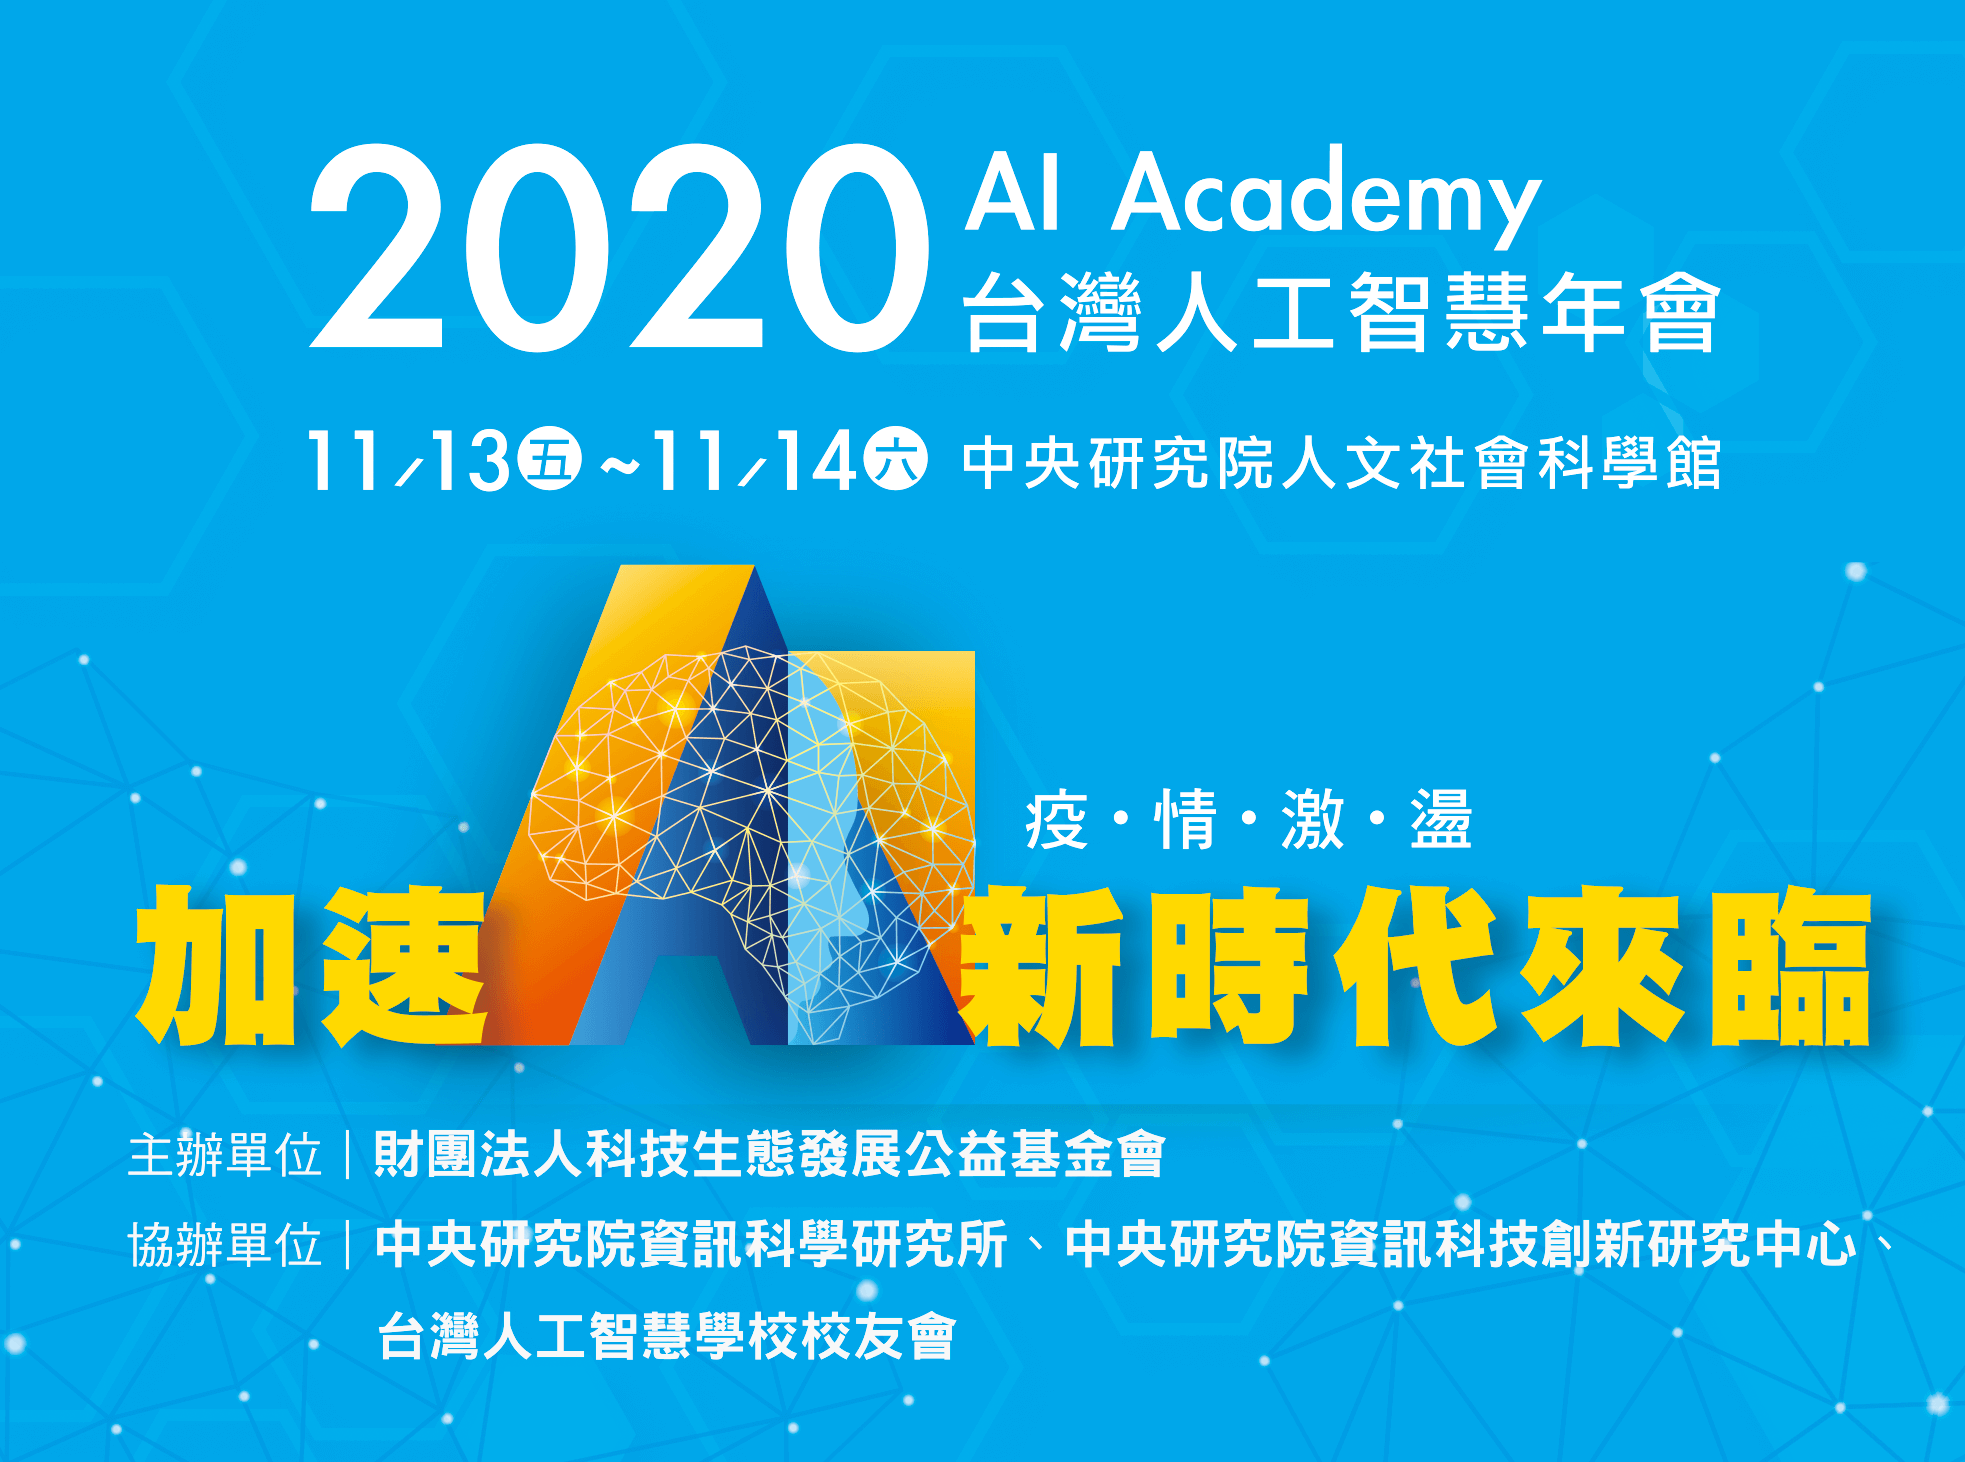 2020 AI Academy 台灣人工智慧年會